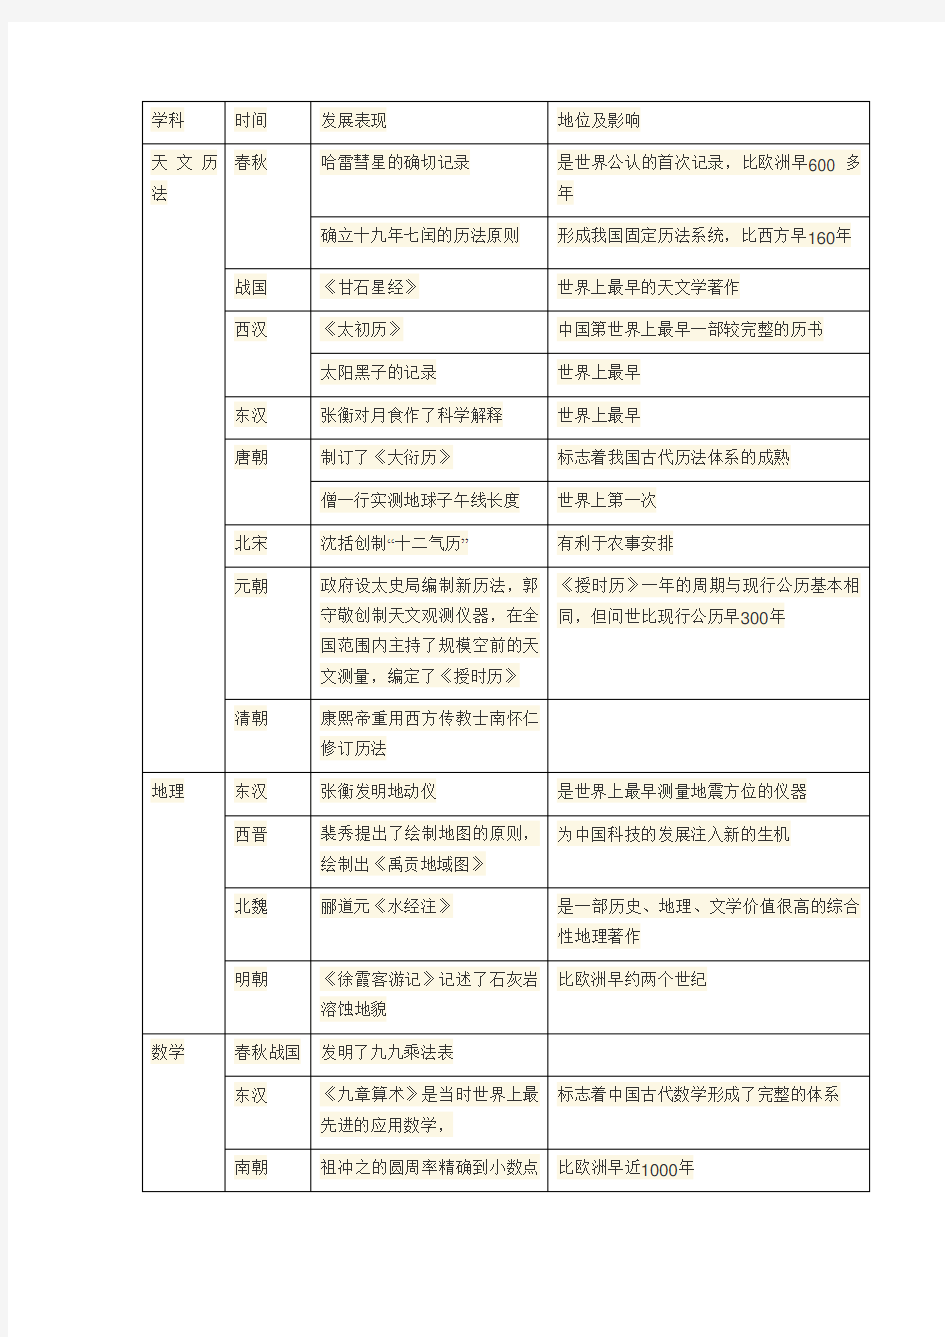 中国古代自然科学发展的成就(整理表格)